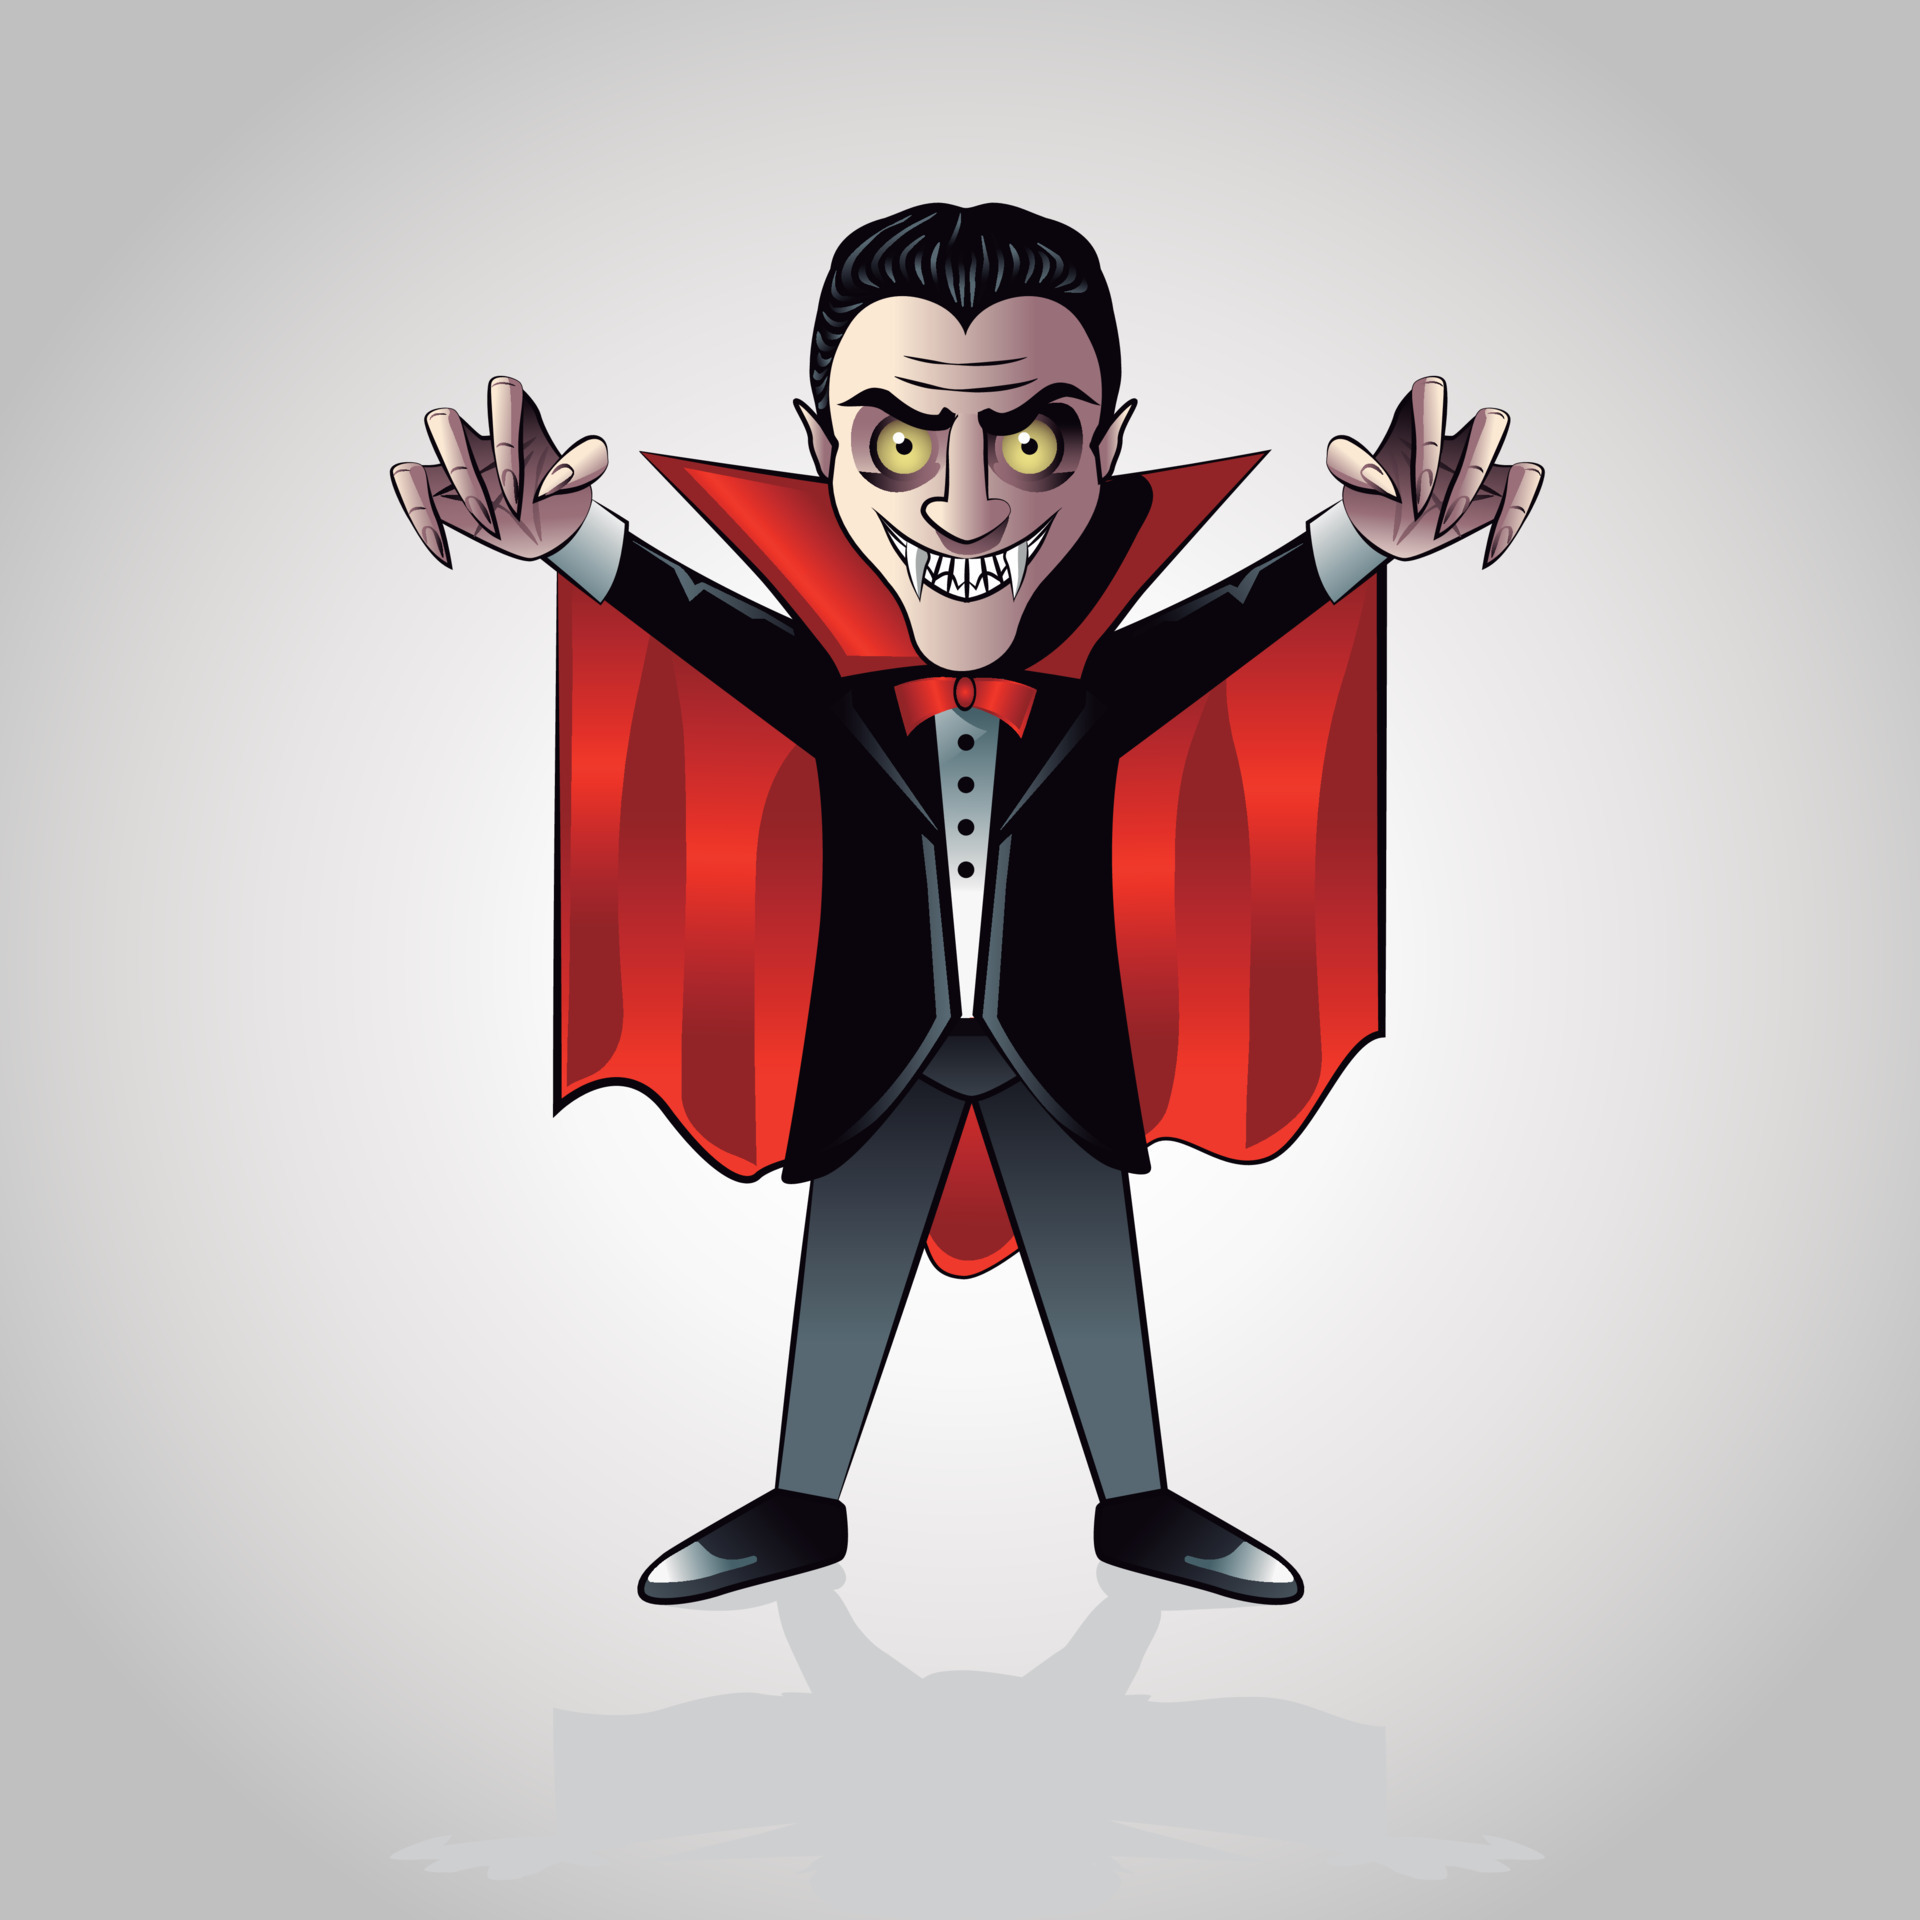 Personagem de desenho animado vampiro com fundo de halloween